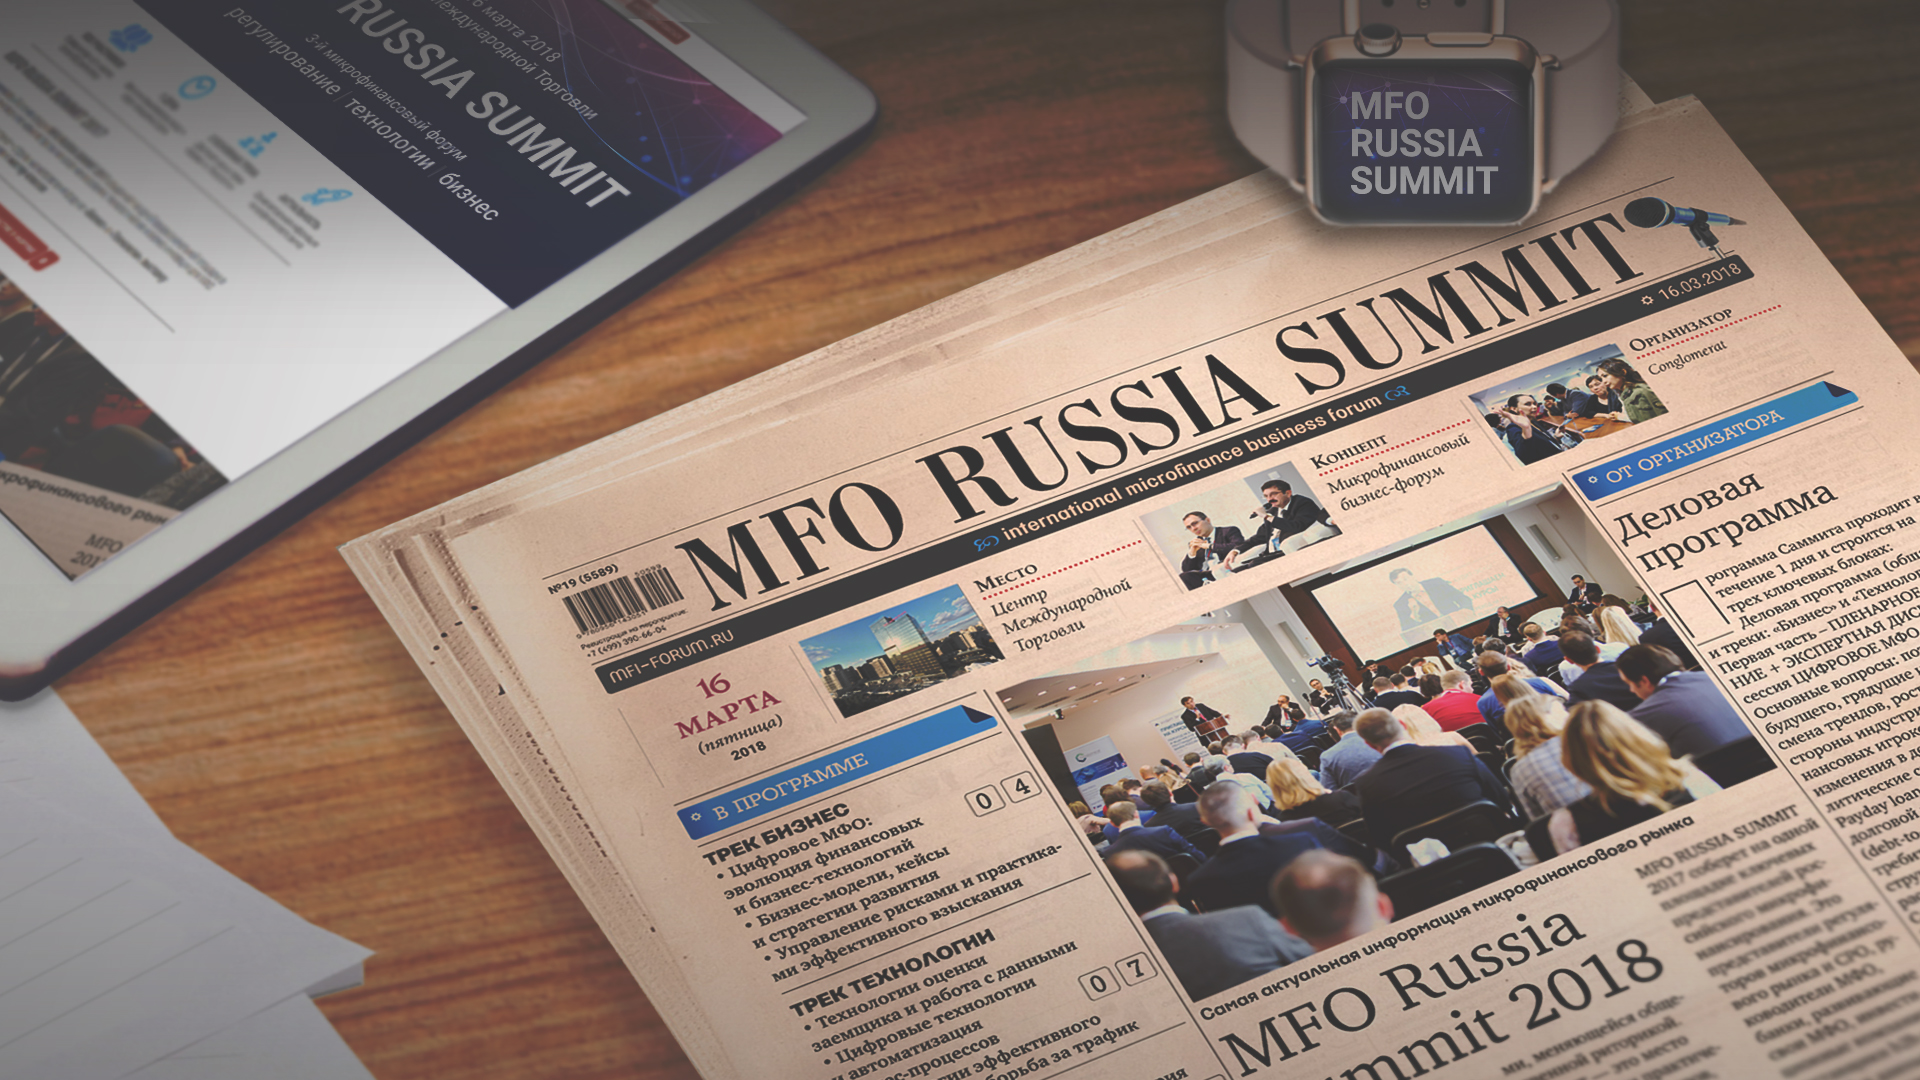 MFO Summit 2018